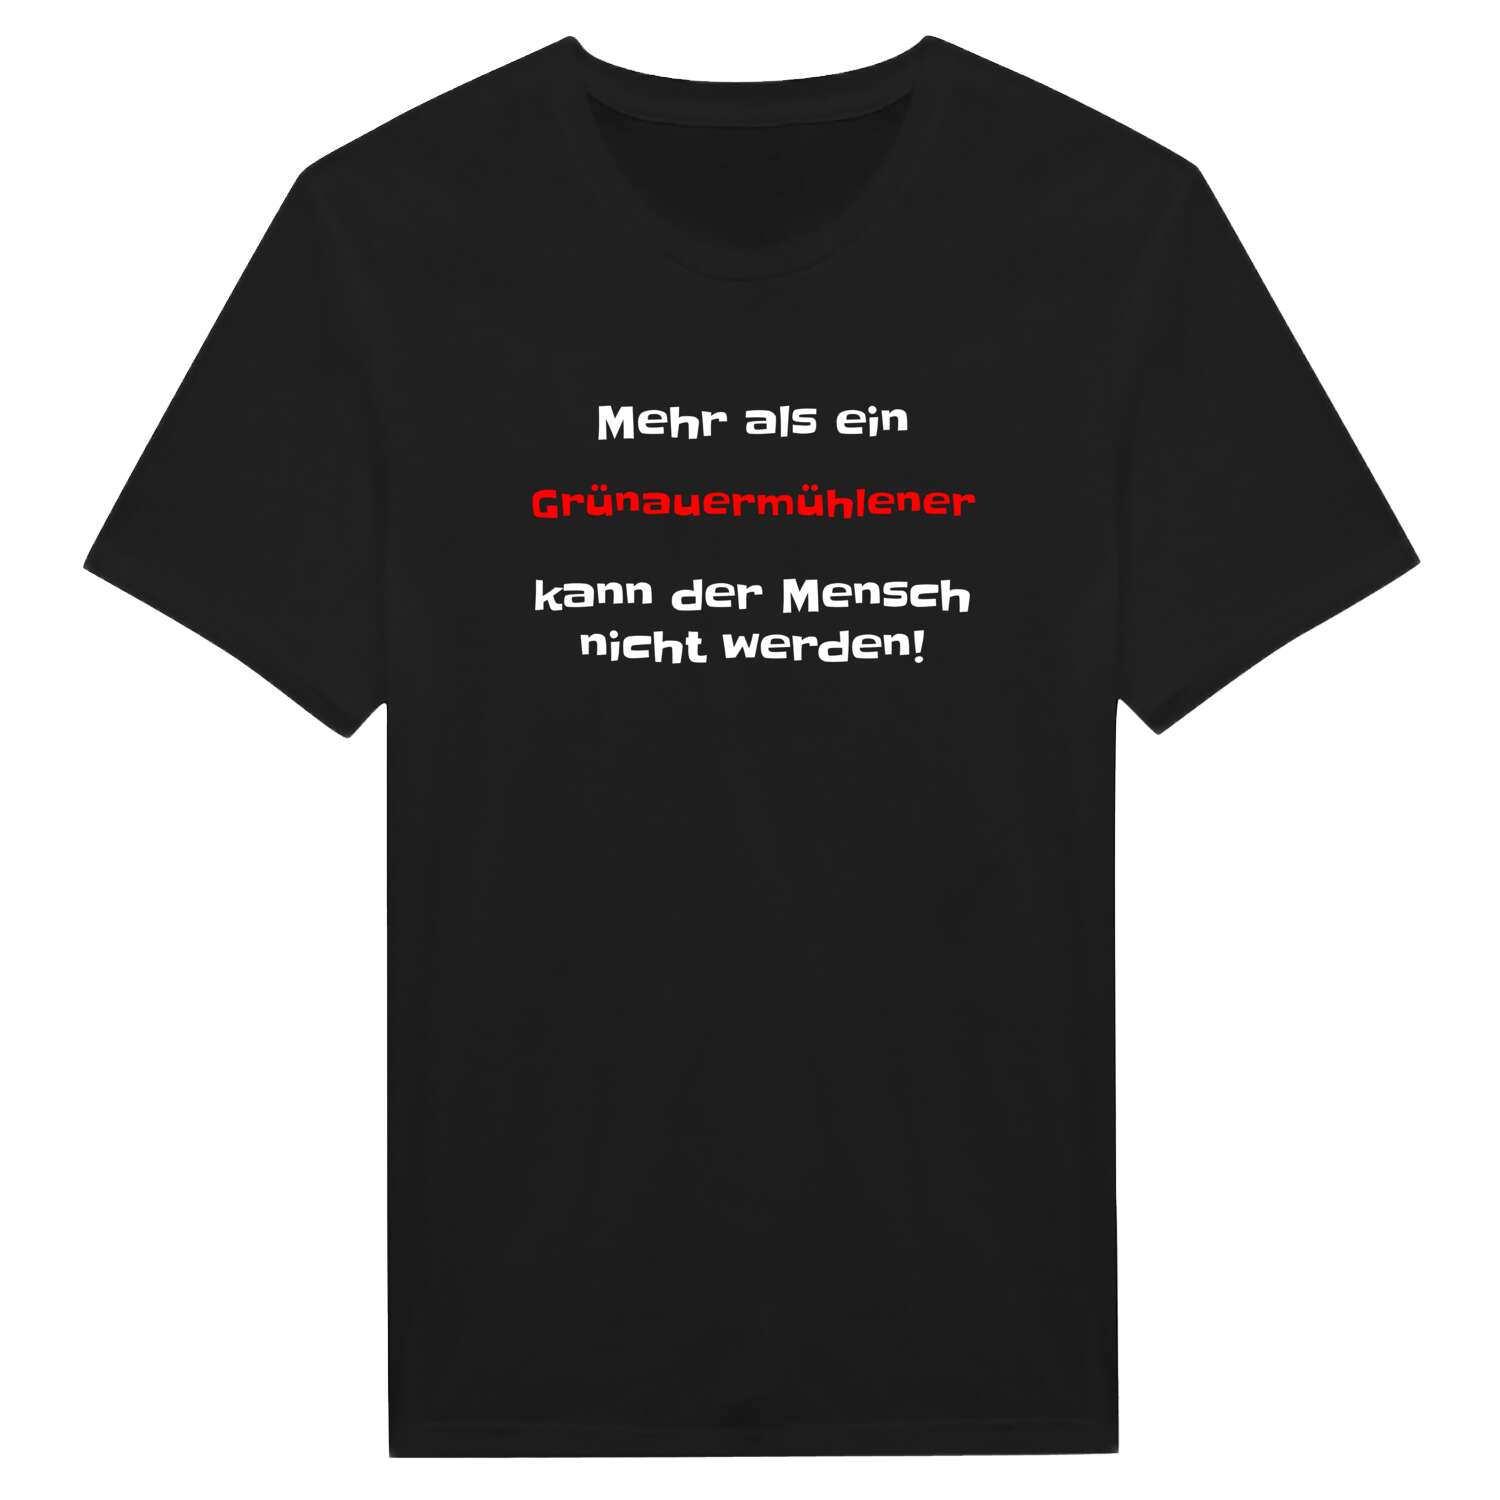 Grünauermühle T-Shirt »Mehr als ein«